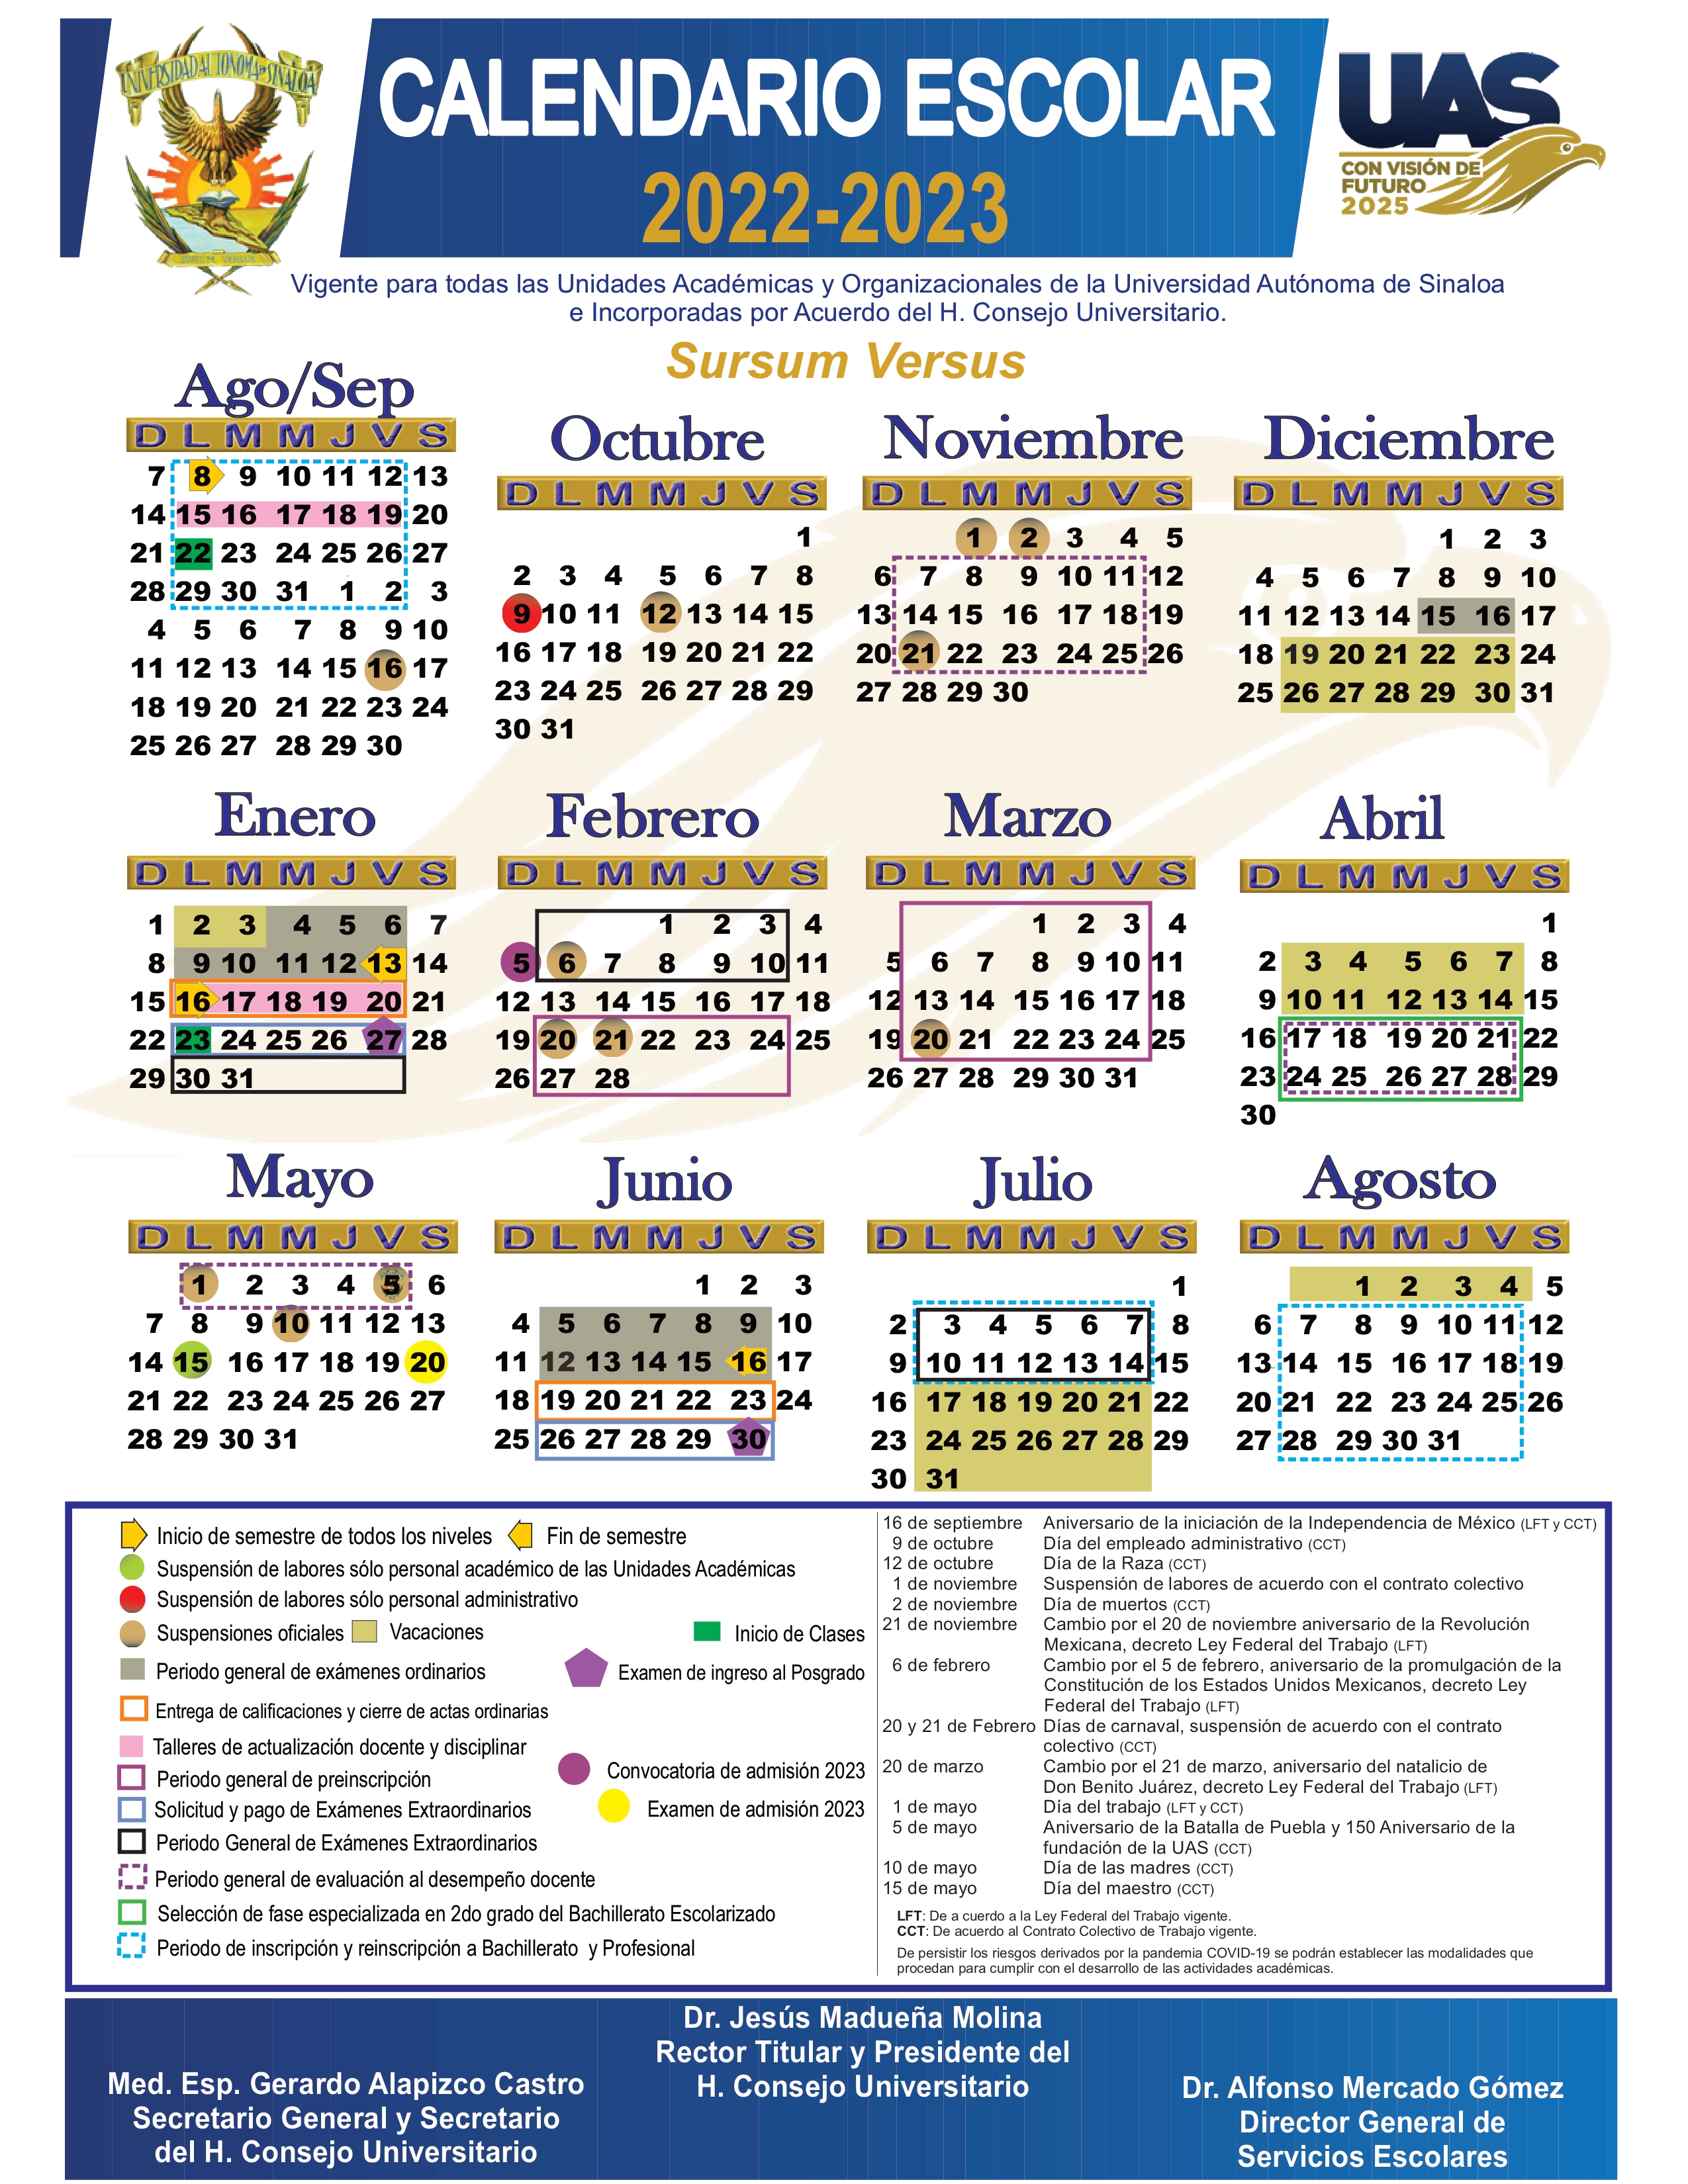 Imagen del calendario de la UAS 2022-2023